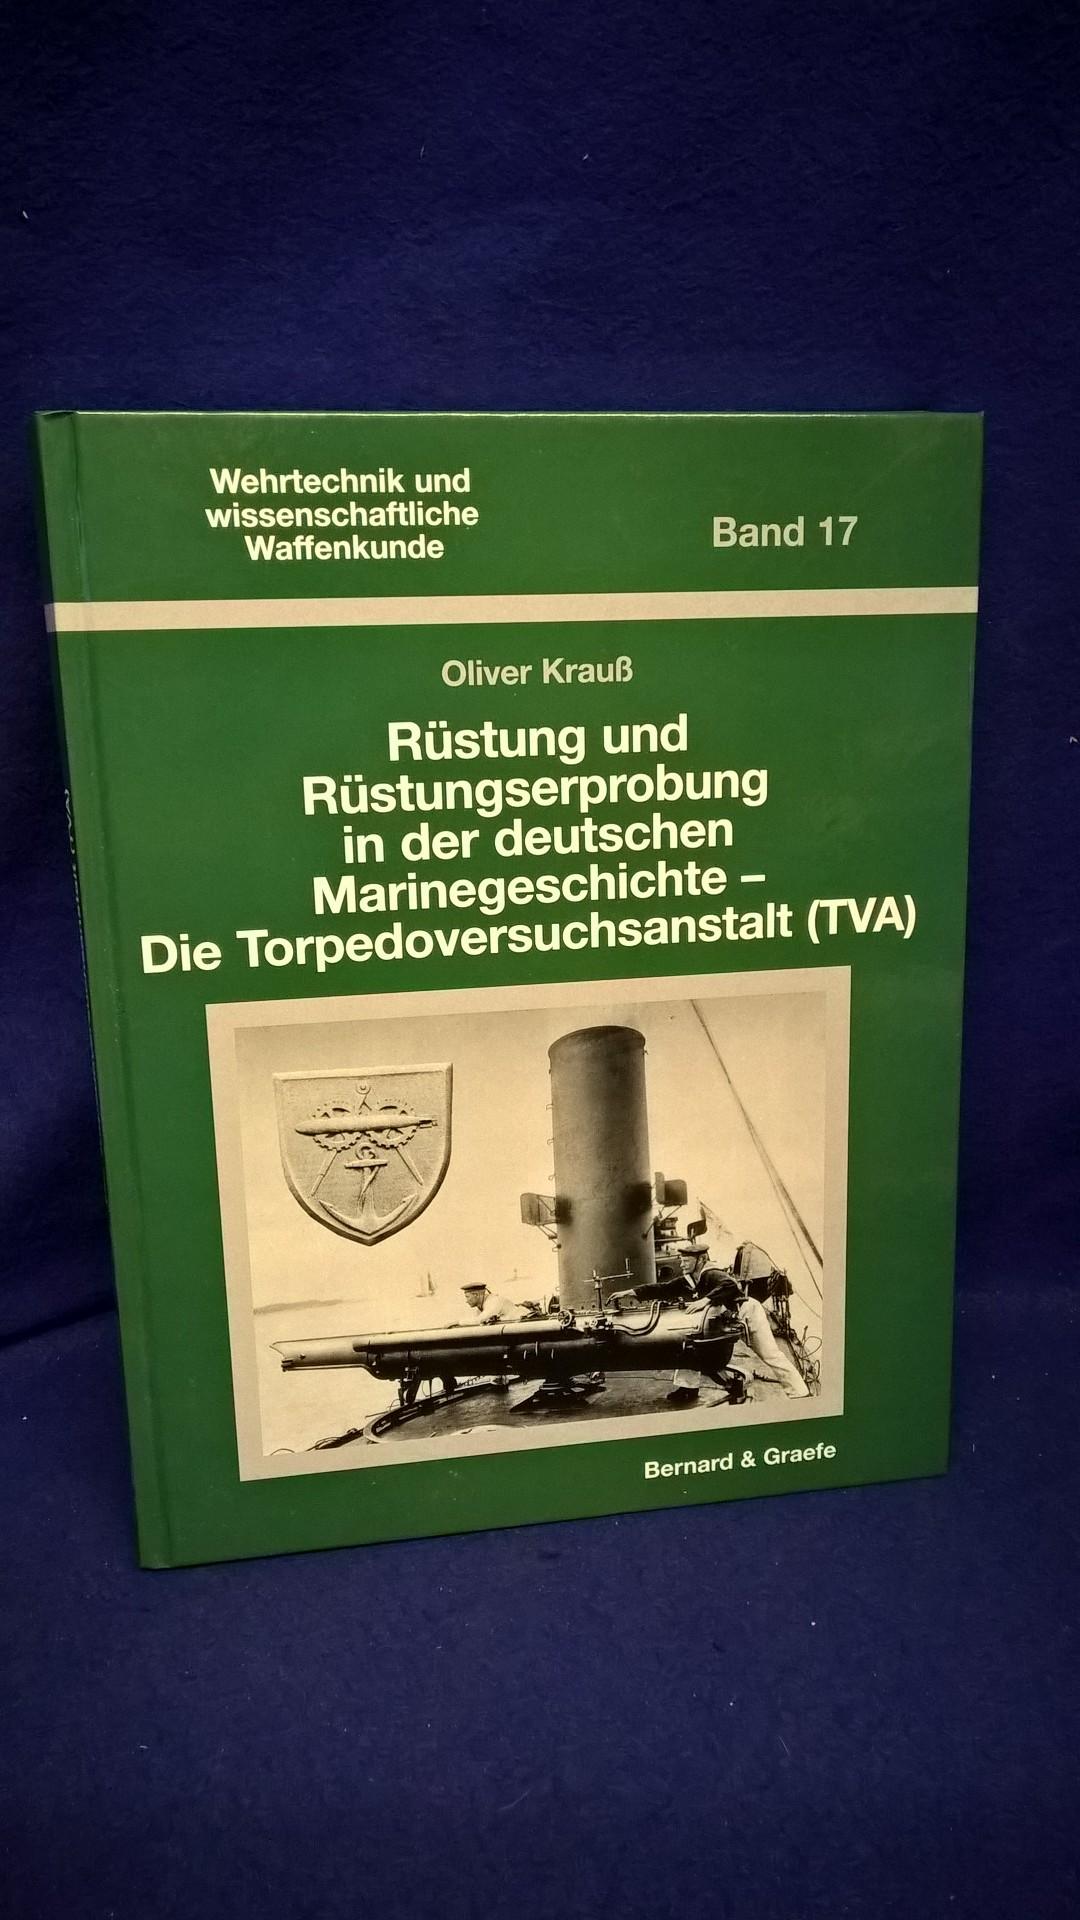 Wehrtechnik und wissenschaftliche Waffenkunde Band 17. Rüstung und Rüstungserprobung in der deutschen Marinegeschichte- Die Torpedoversuchsanstalt (TVA)